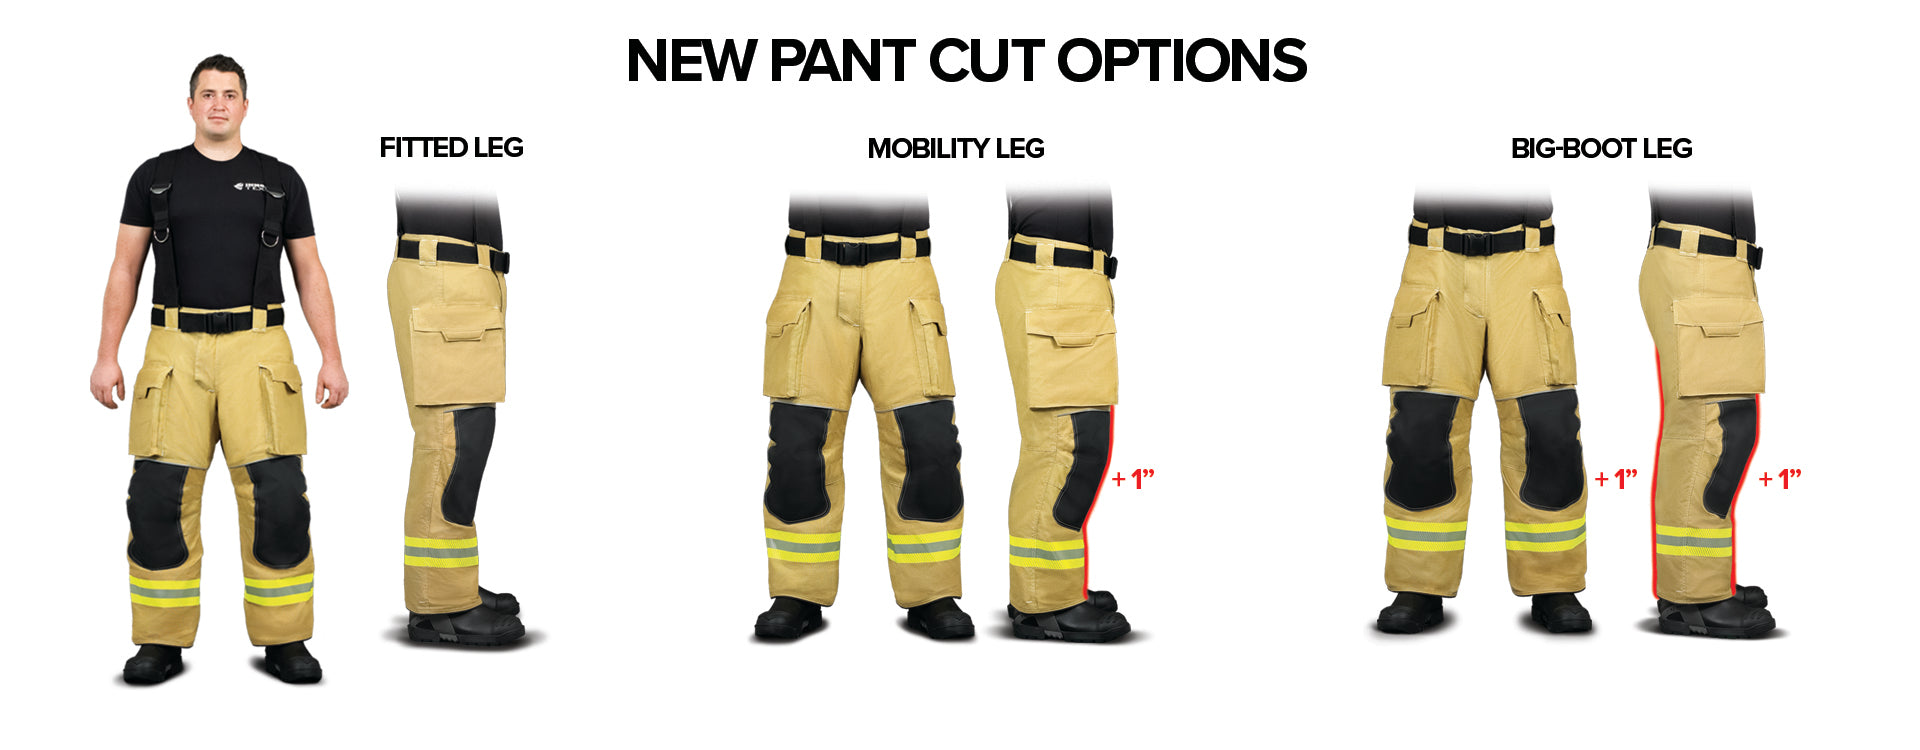 New Pant Cut Options